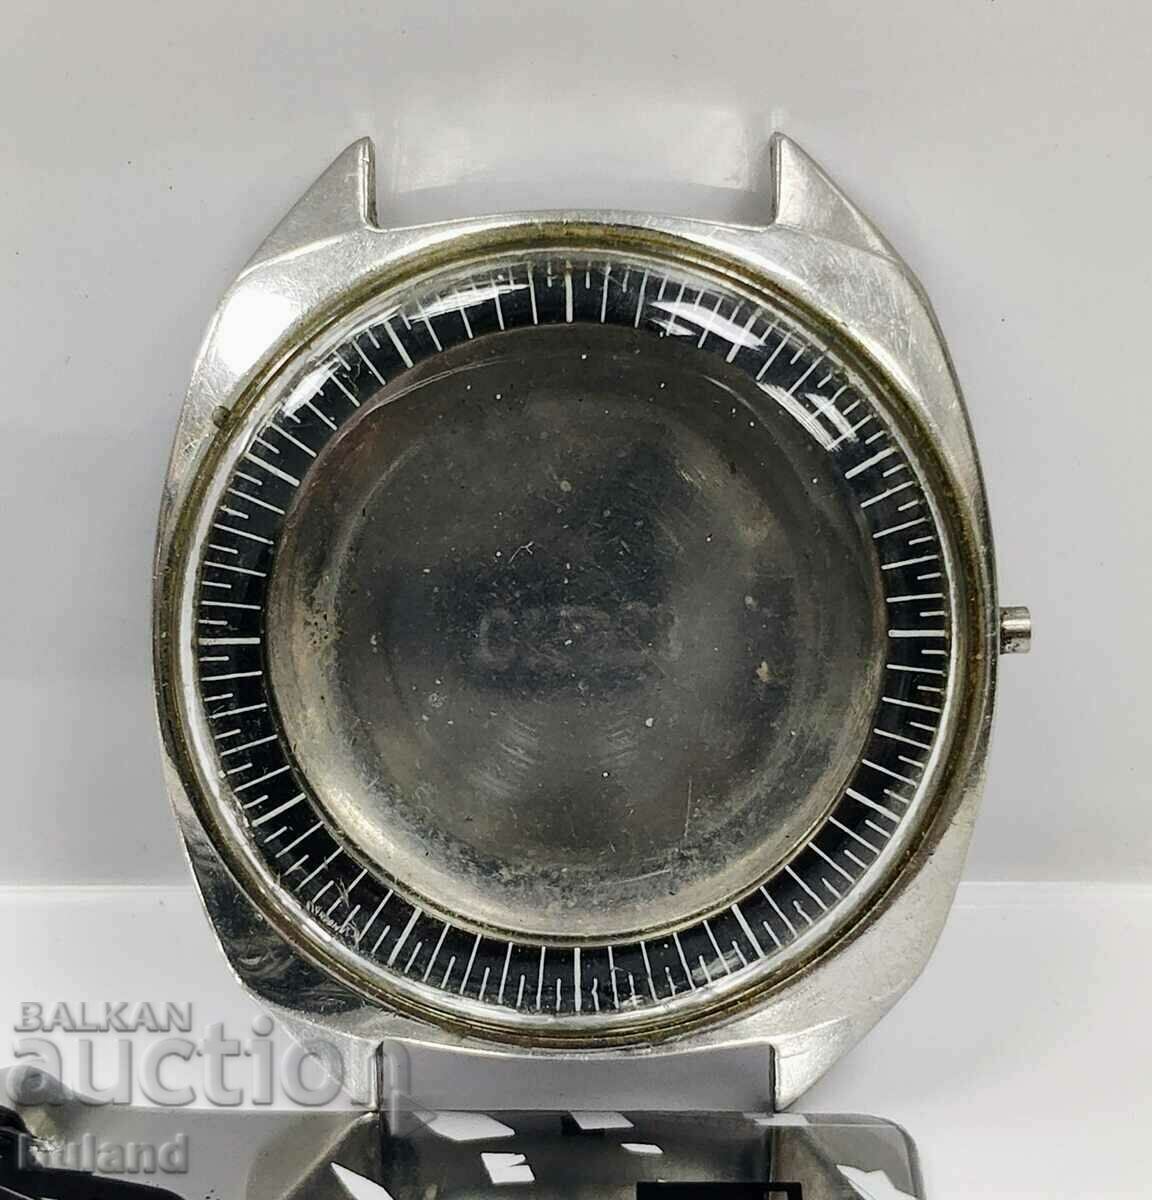 Steel Case for Soviet Flight Automatic Watch USSR